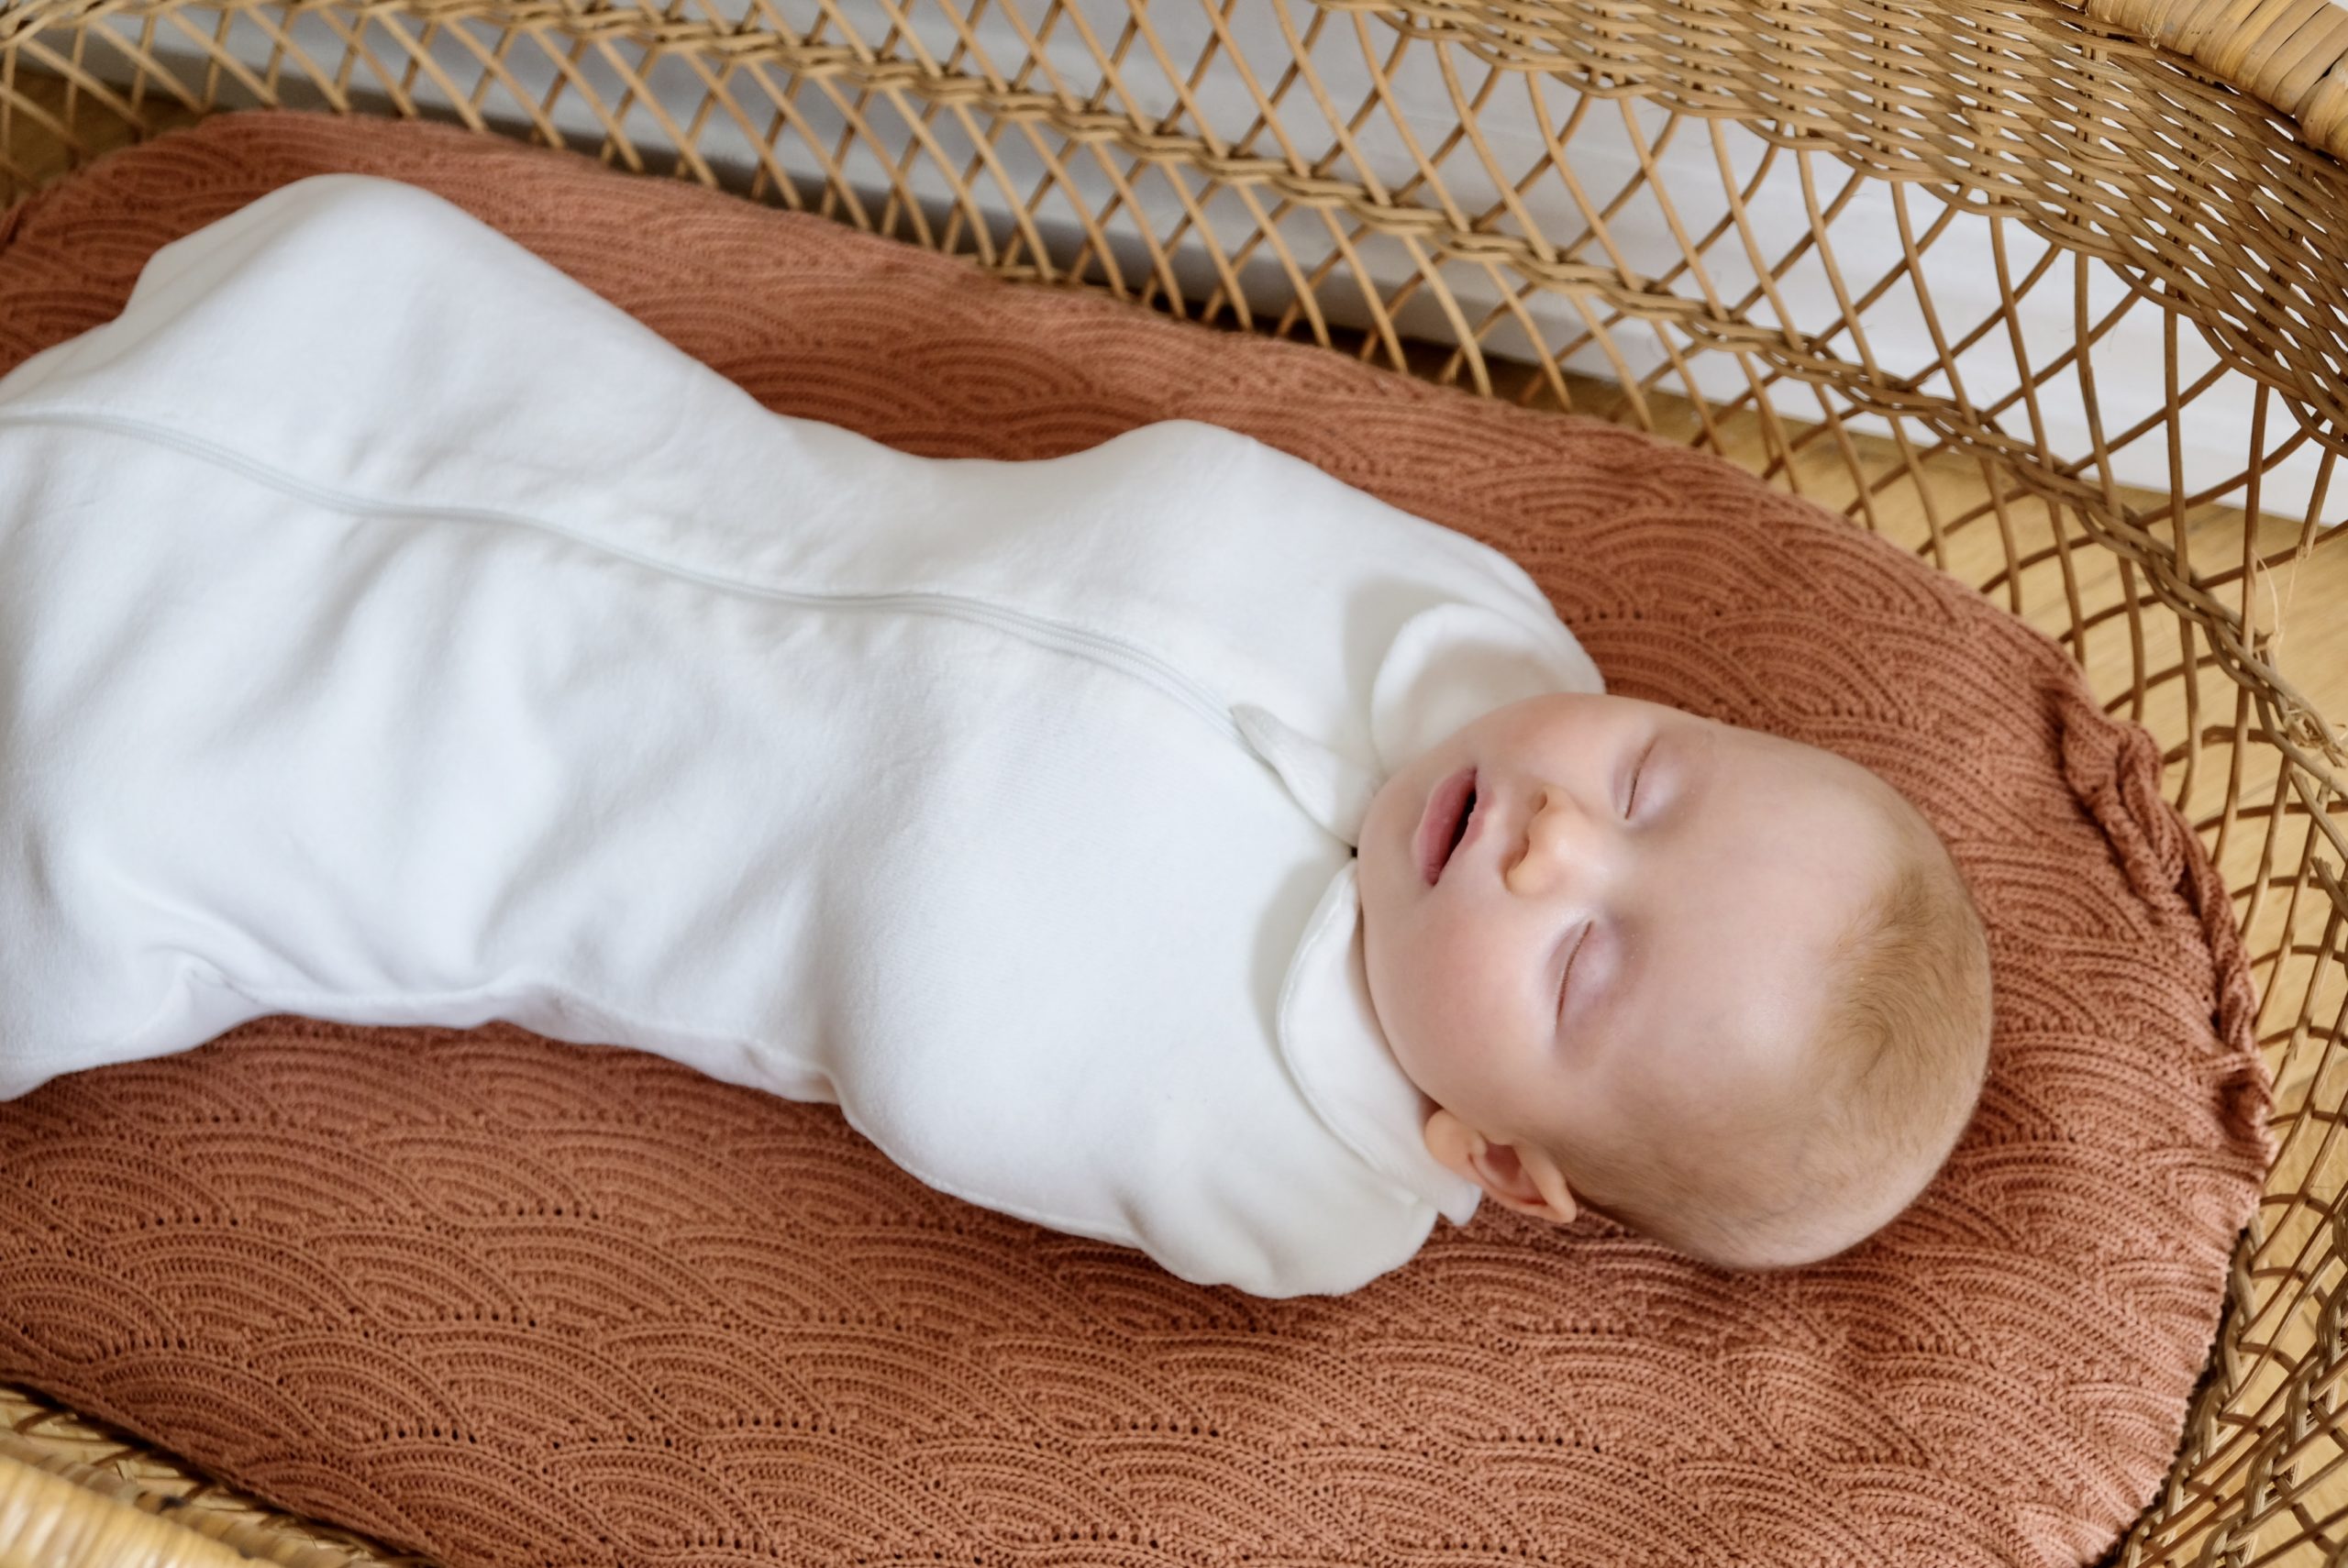 Conseils de sécurité pour le sommeil de votre bébé